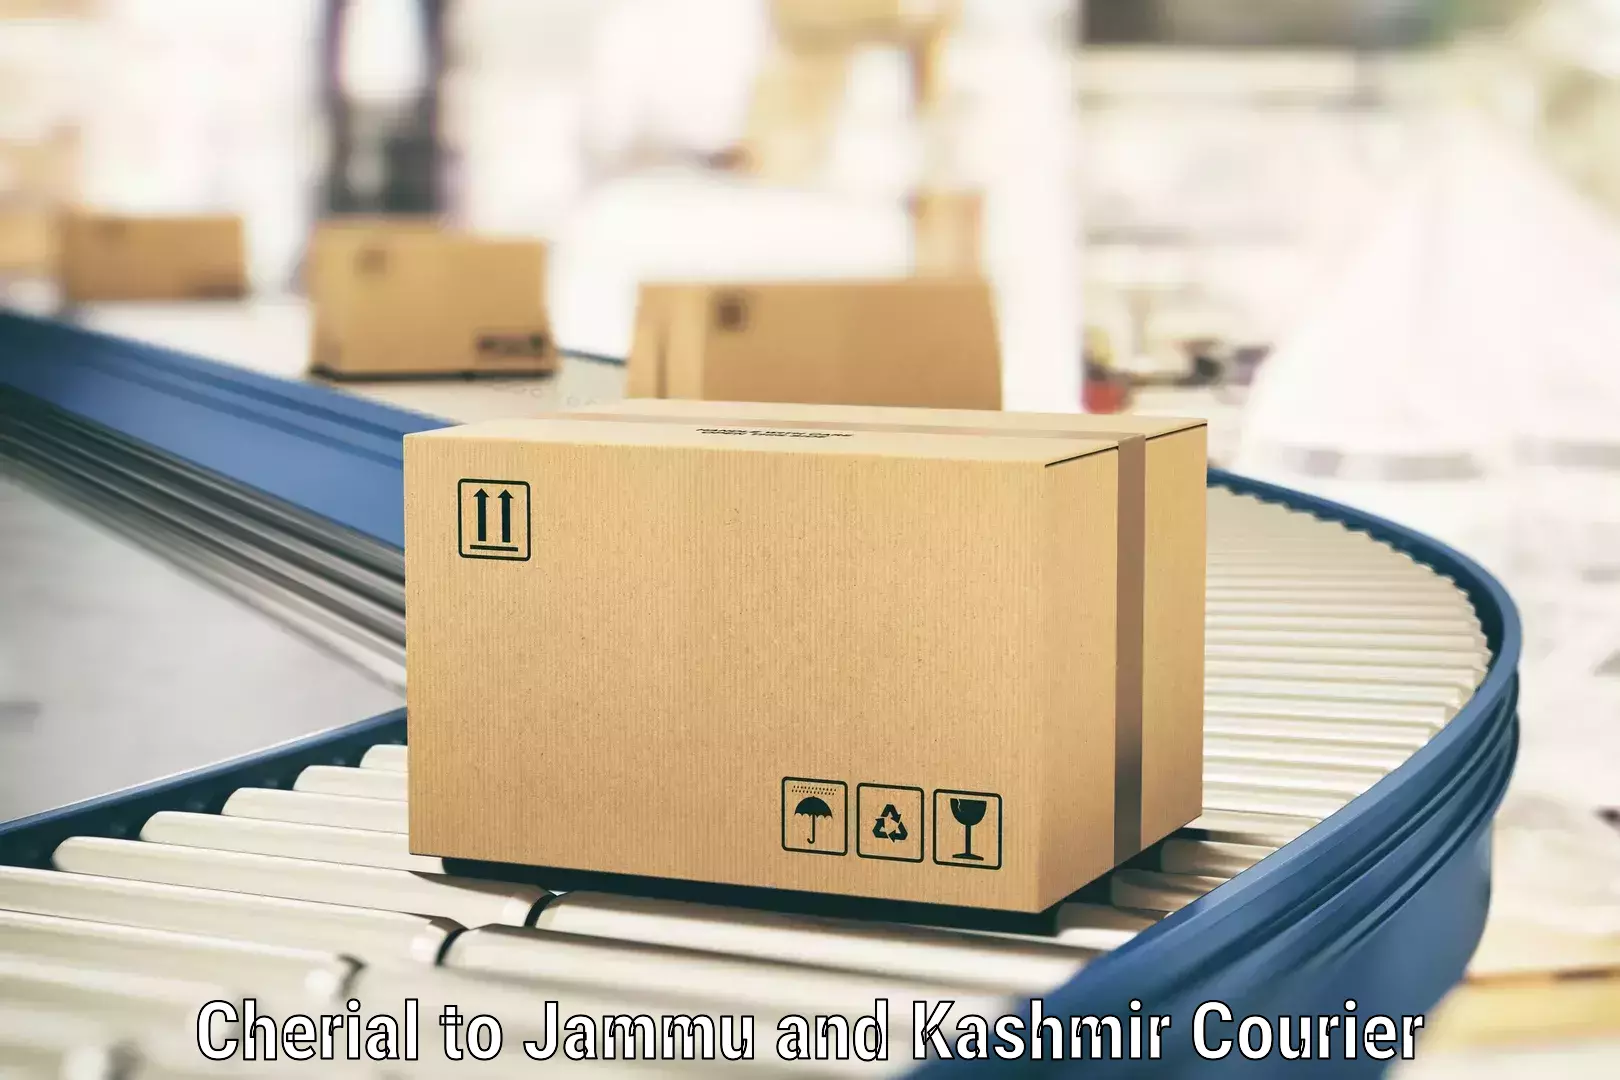 Flexible parcel services Cherial to Kargil